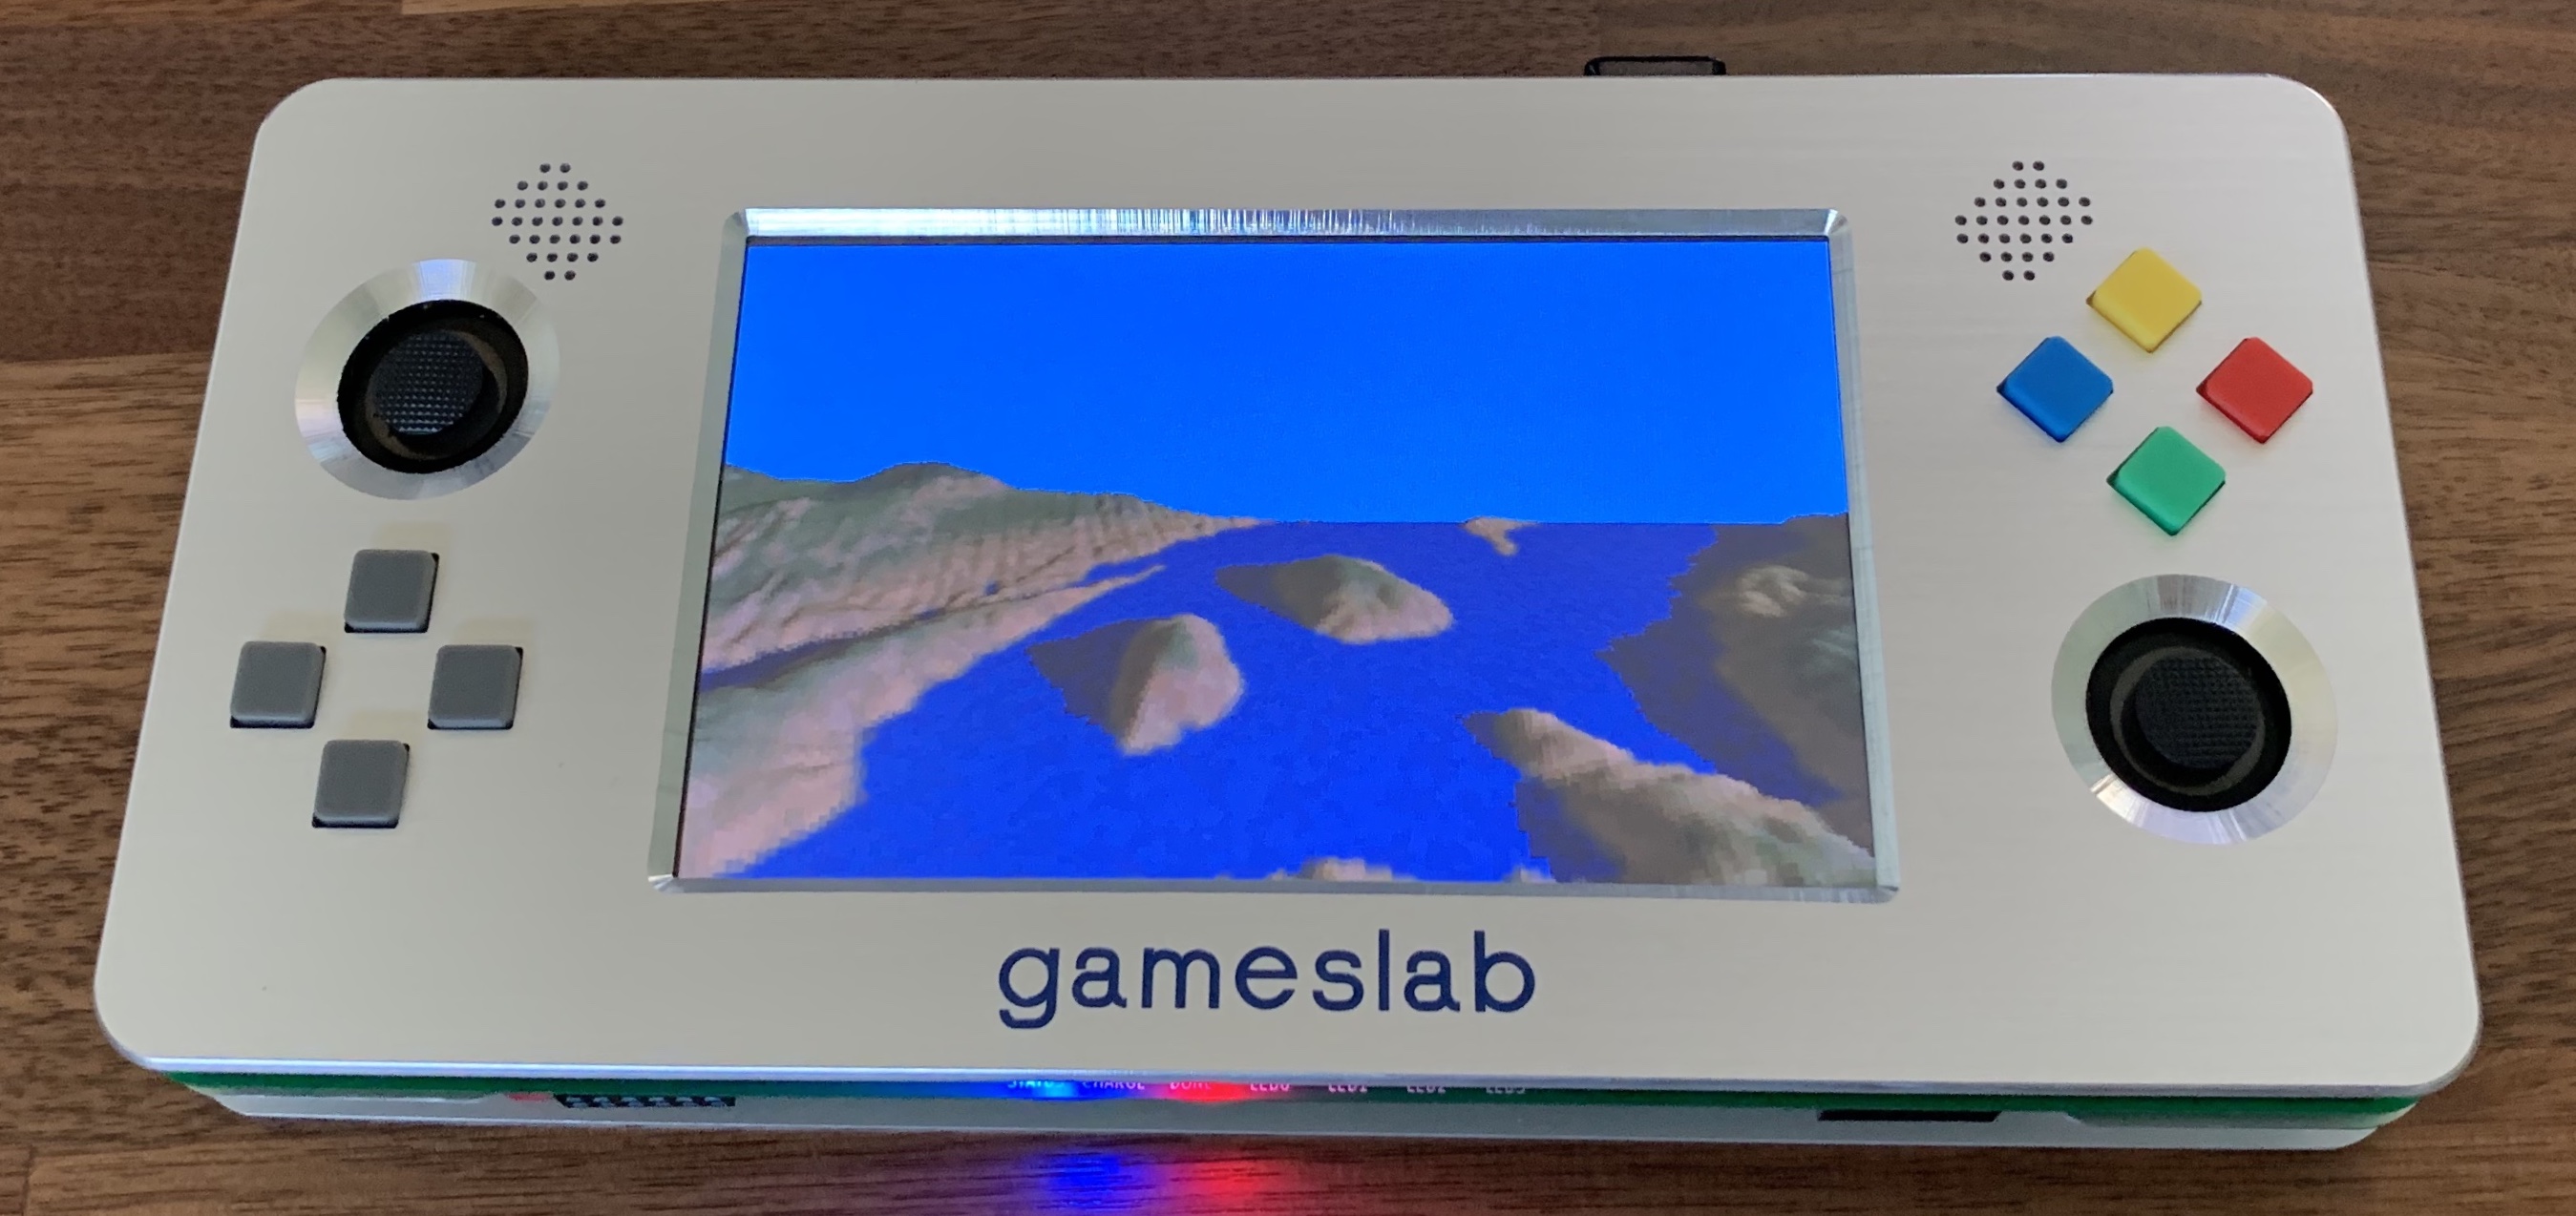 Gameslab running a 3D terrain demo